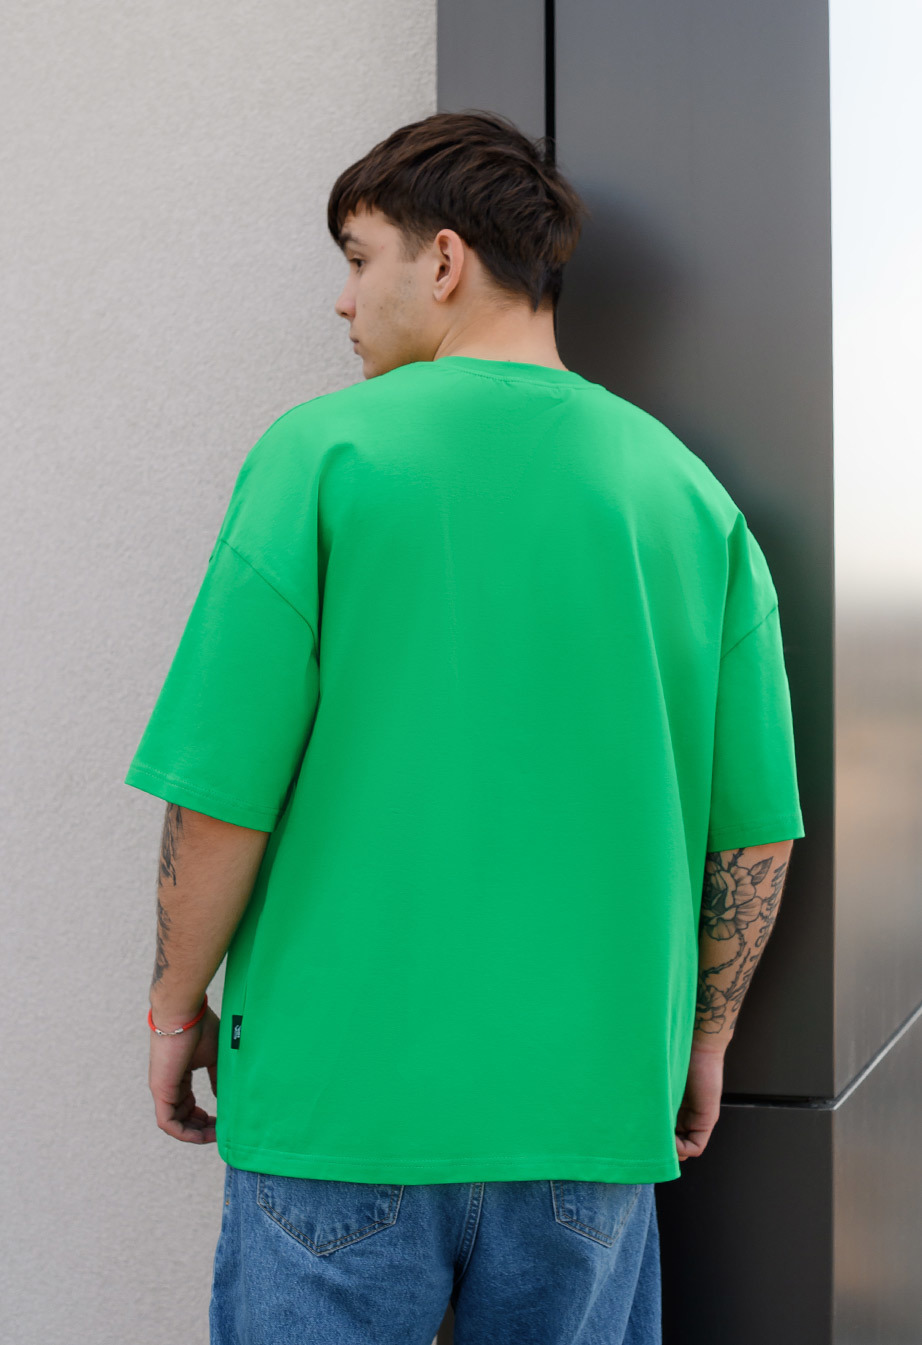 Koszulka Staff green basic oversize